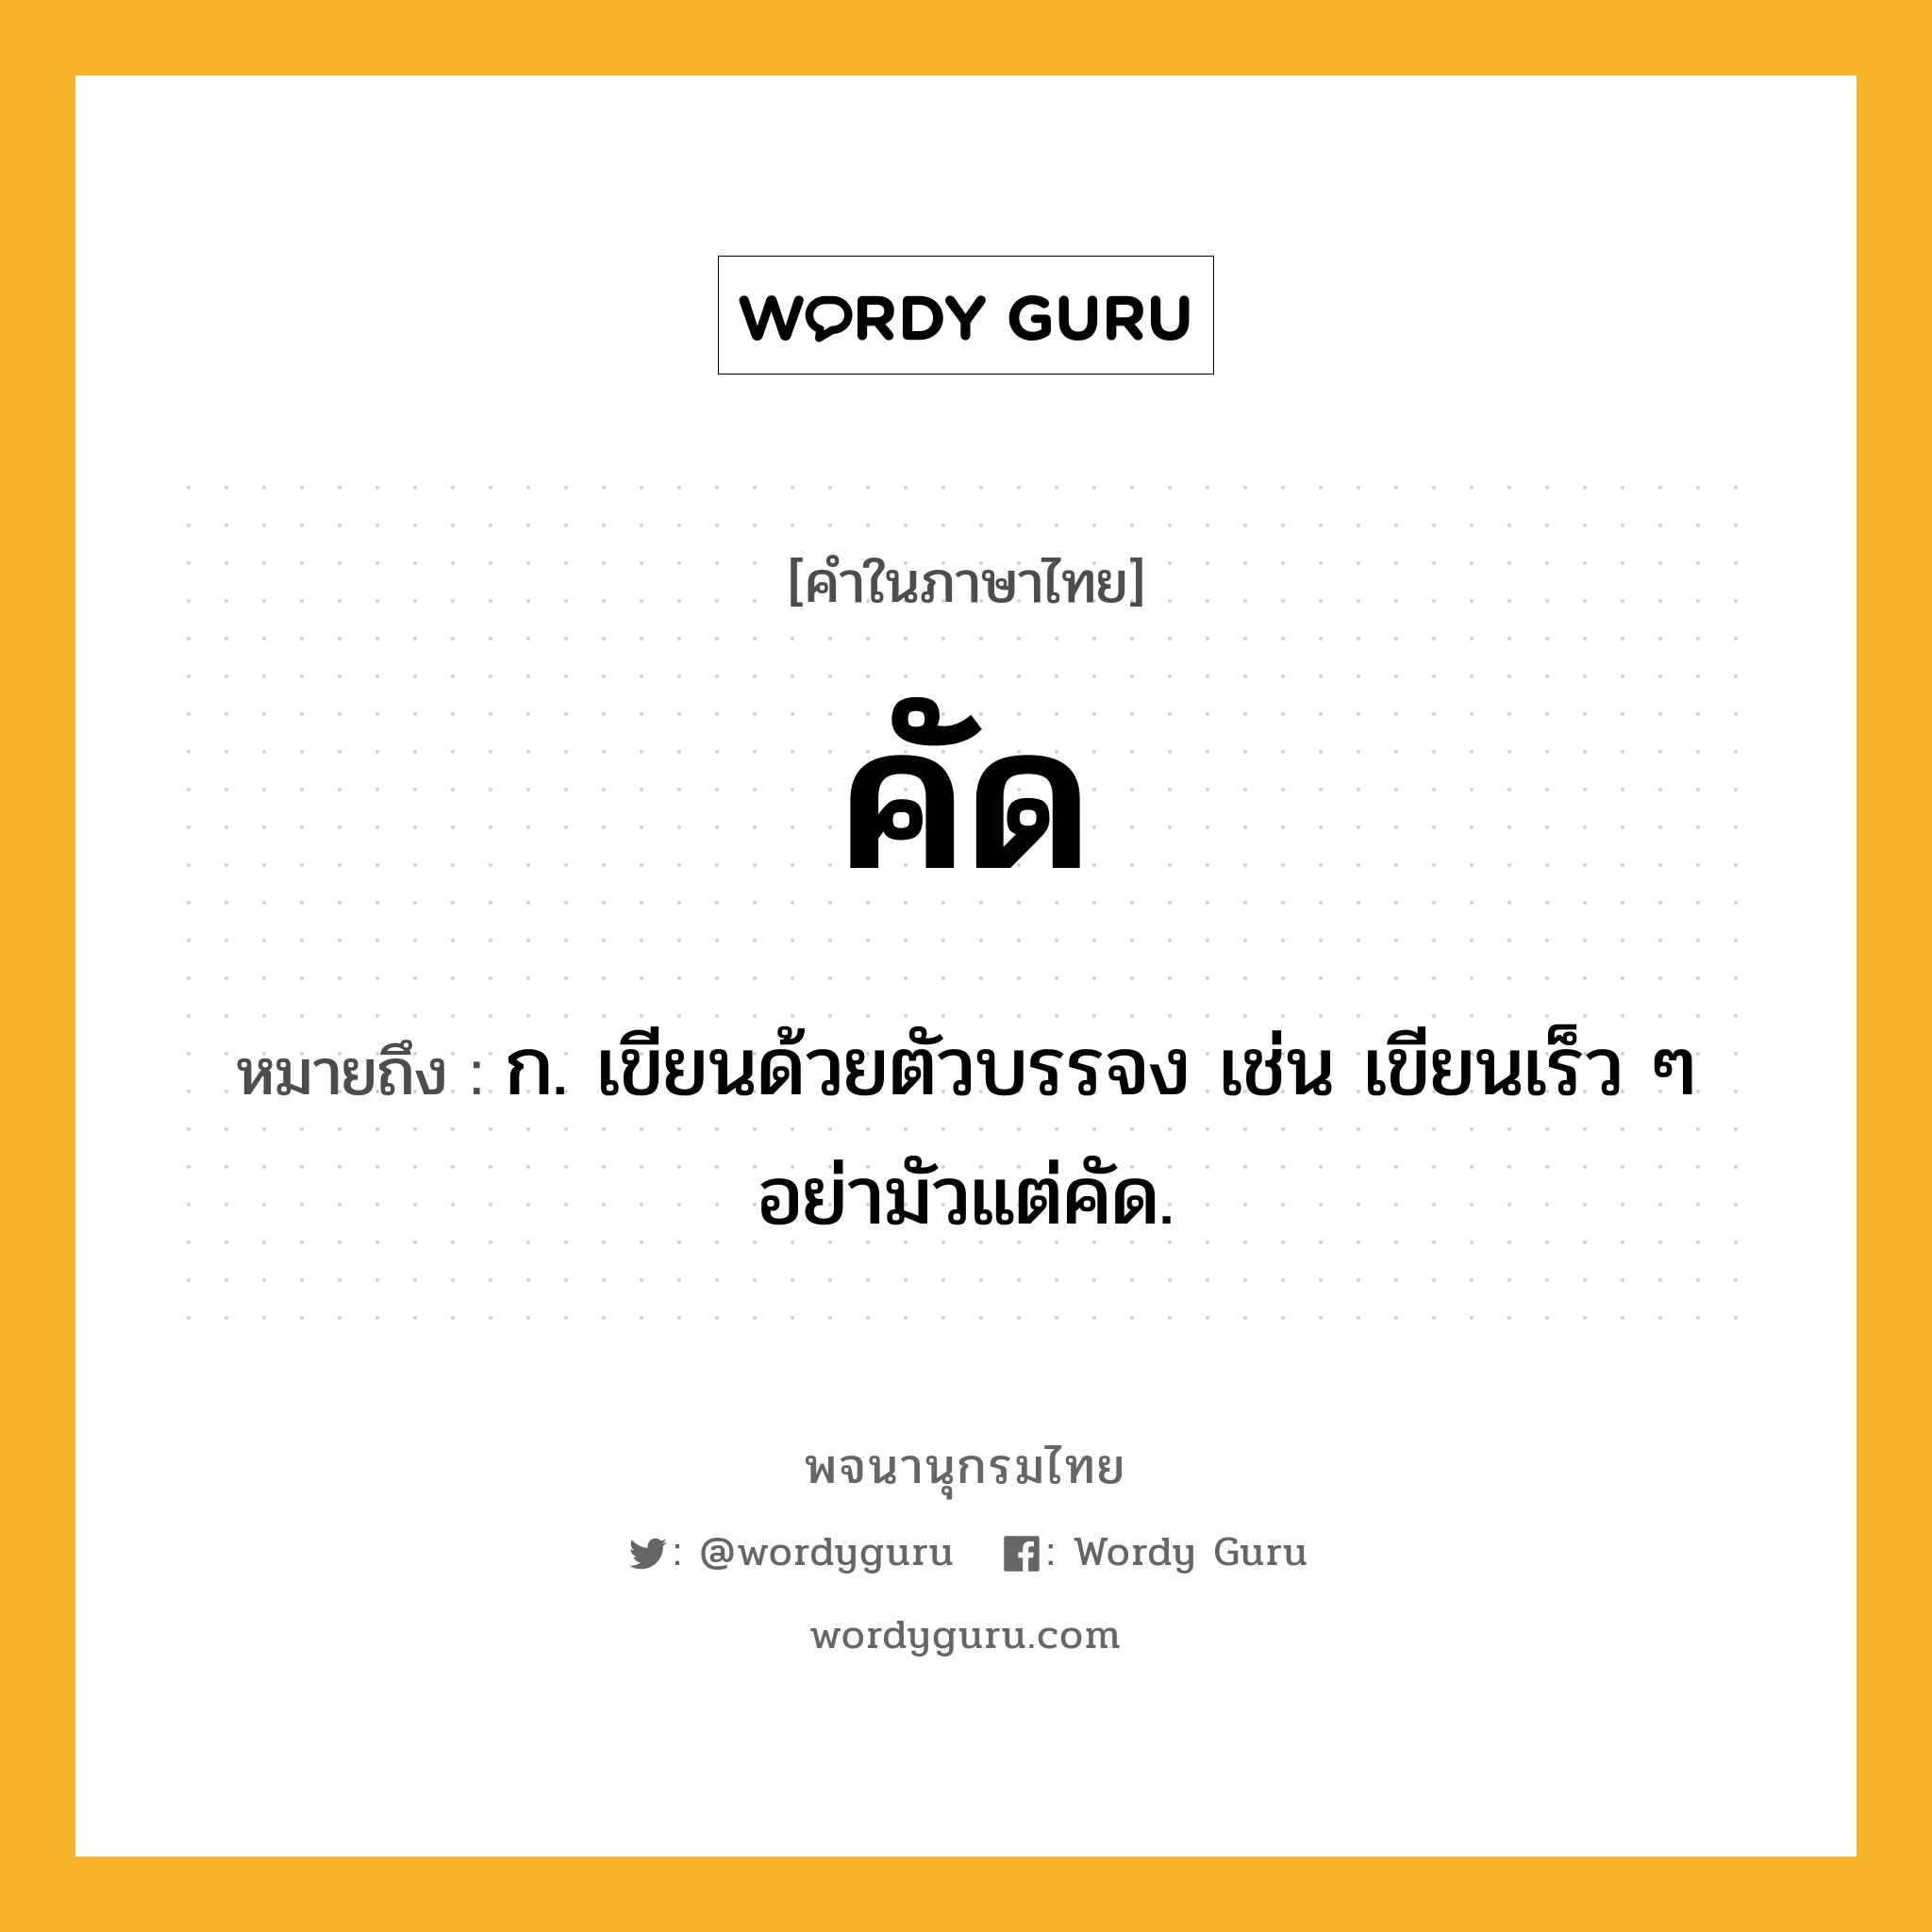 คัด ความหมาย หมายถึงอะไร?, คำในภาษาไทย คัด หมายถึง ก. เขียนด้วยตัวบรรจง เช่น เขียนเร็ว ๆ อย่ามัวแต่คัด.